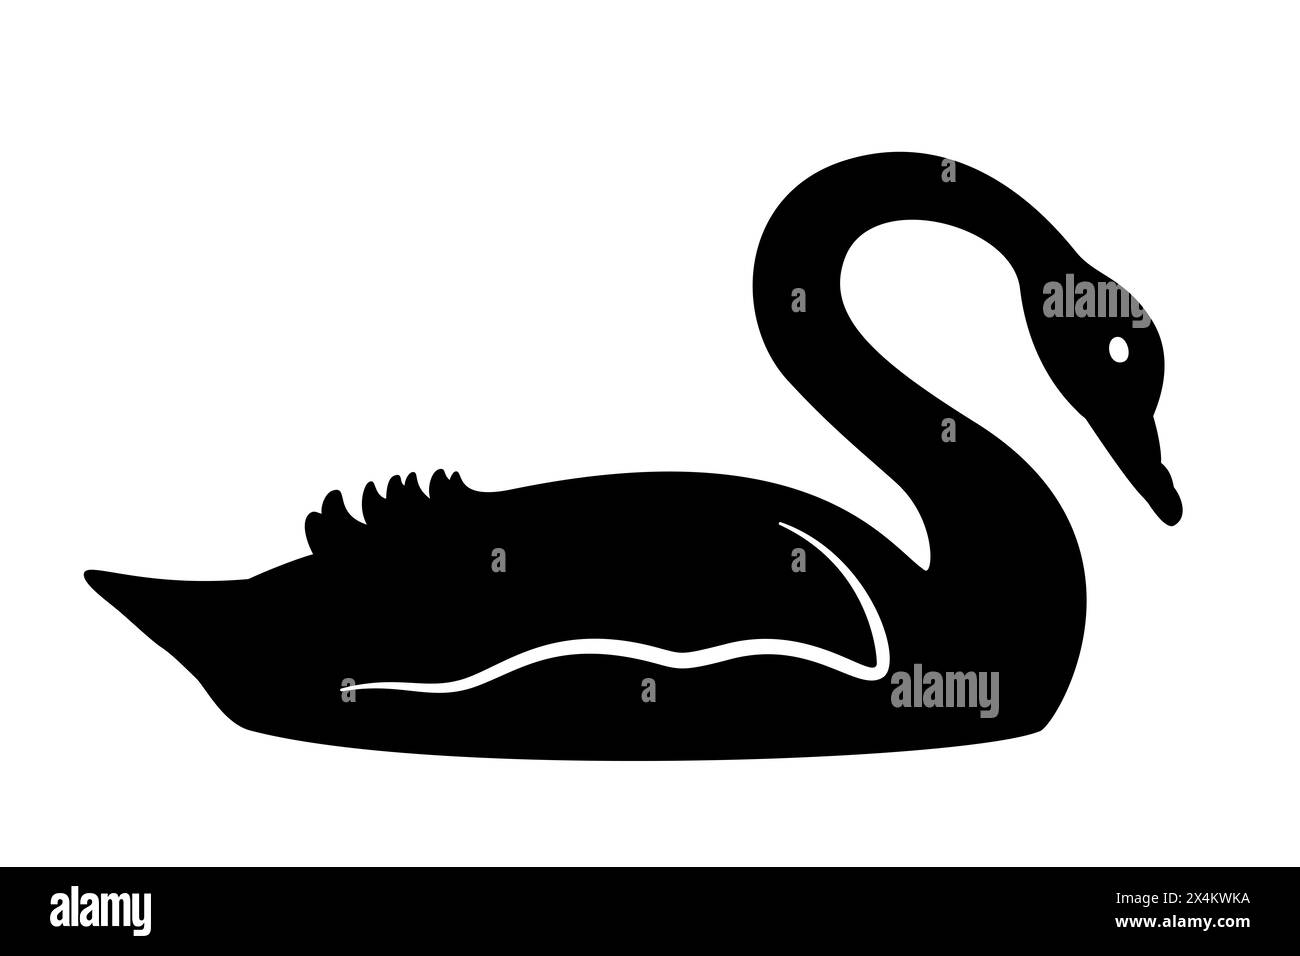 Profilo a cigno nero e silhouette di un grande uccello acquatico. Un simbolo per gli eventi e la teoria del cigno nero, una metafora per eventi inaspettati di grande grandezza Foto Stock